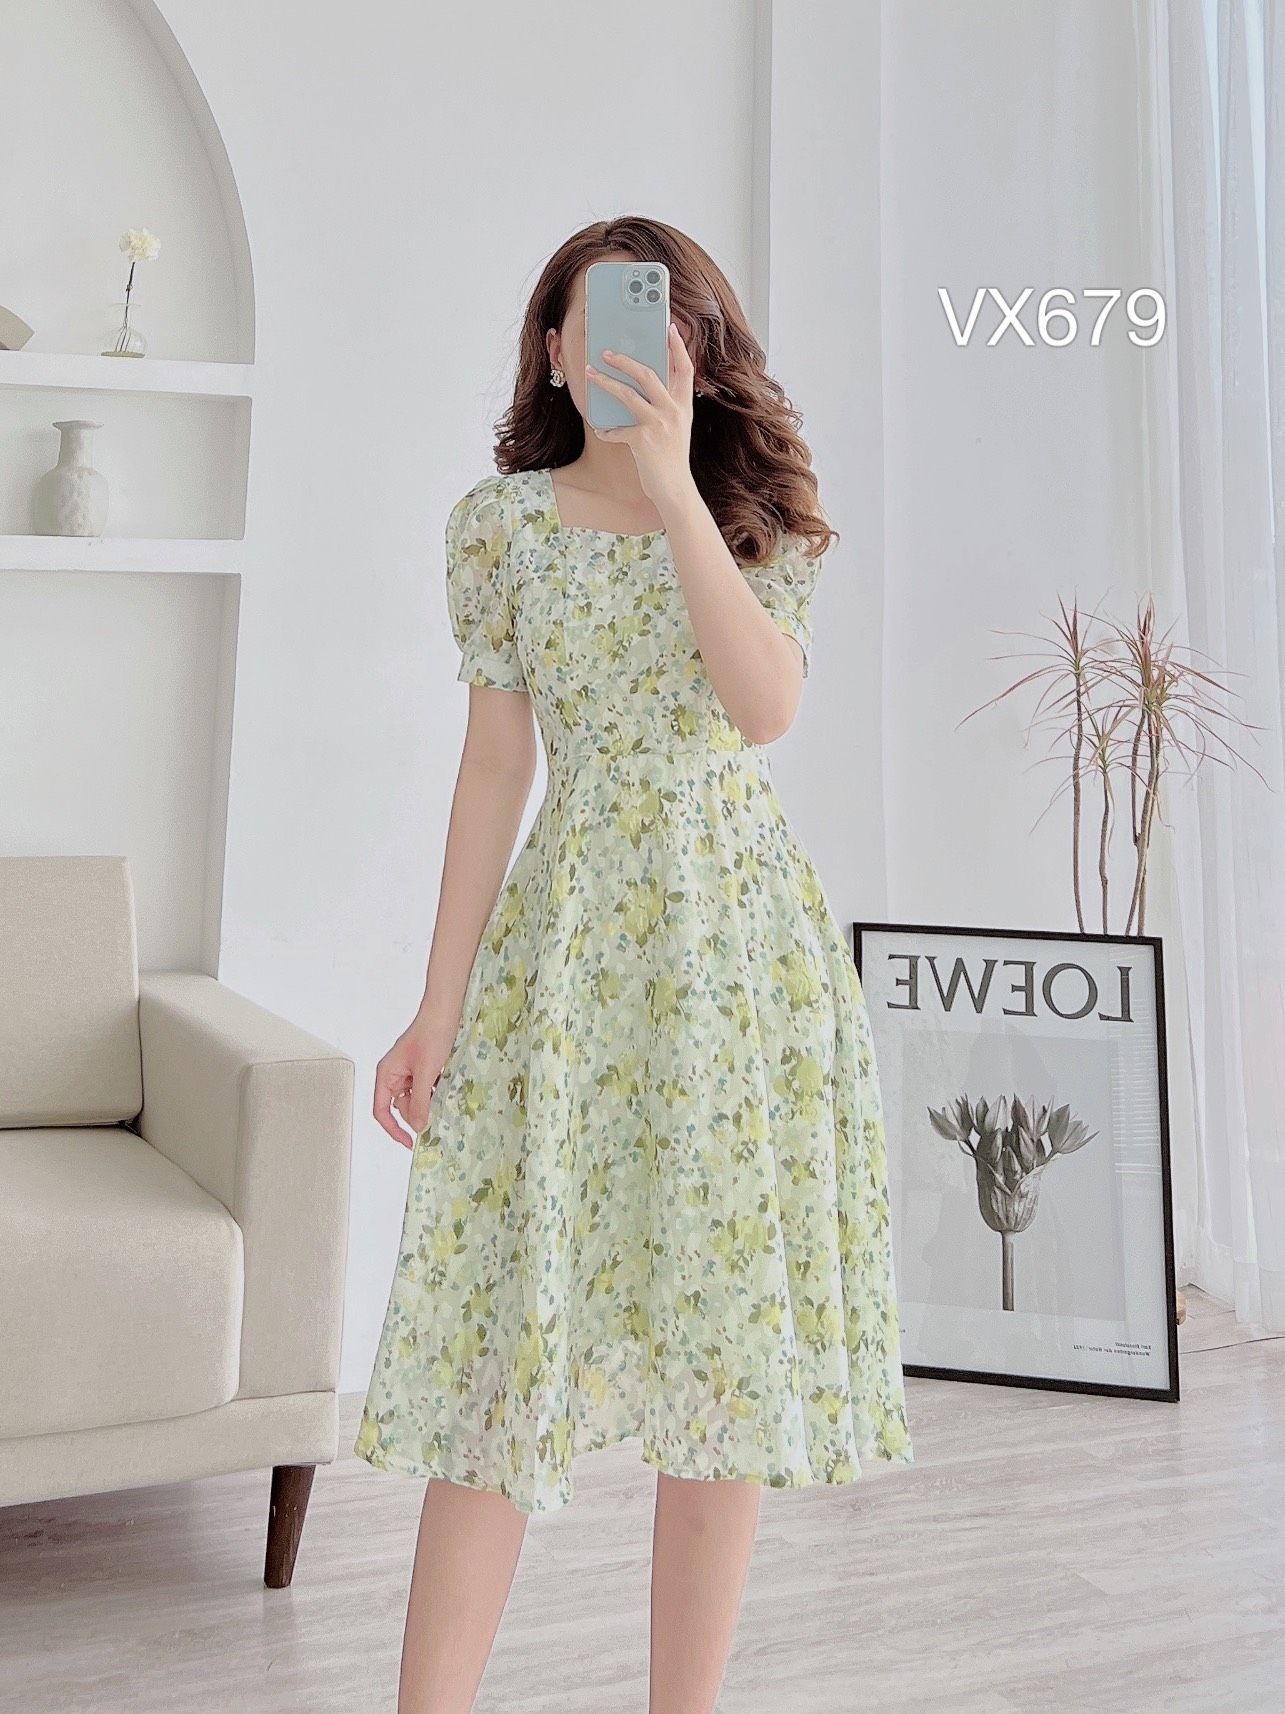 D214 : Váy voan hoa nhí HQ cổ chữ V thắt dây hở lưng - yishop.com.vn